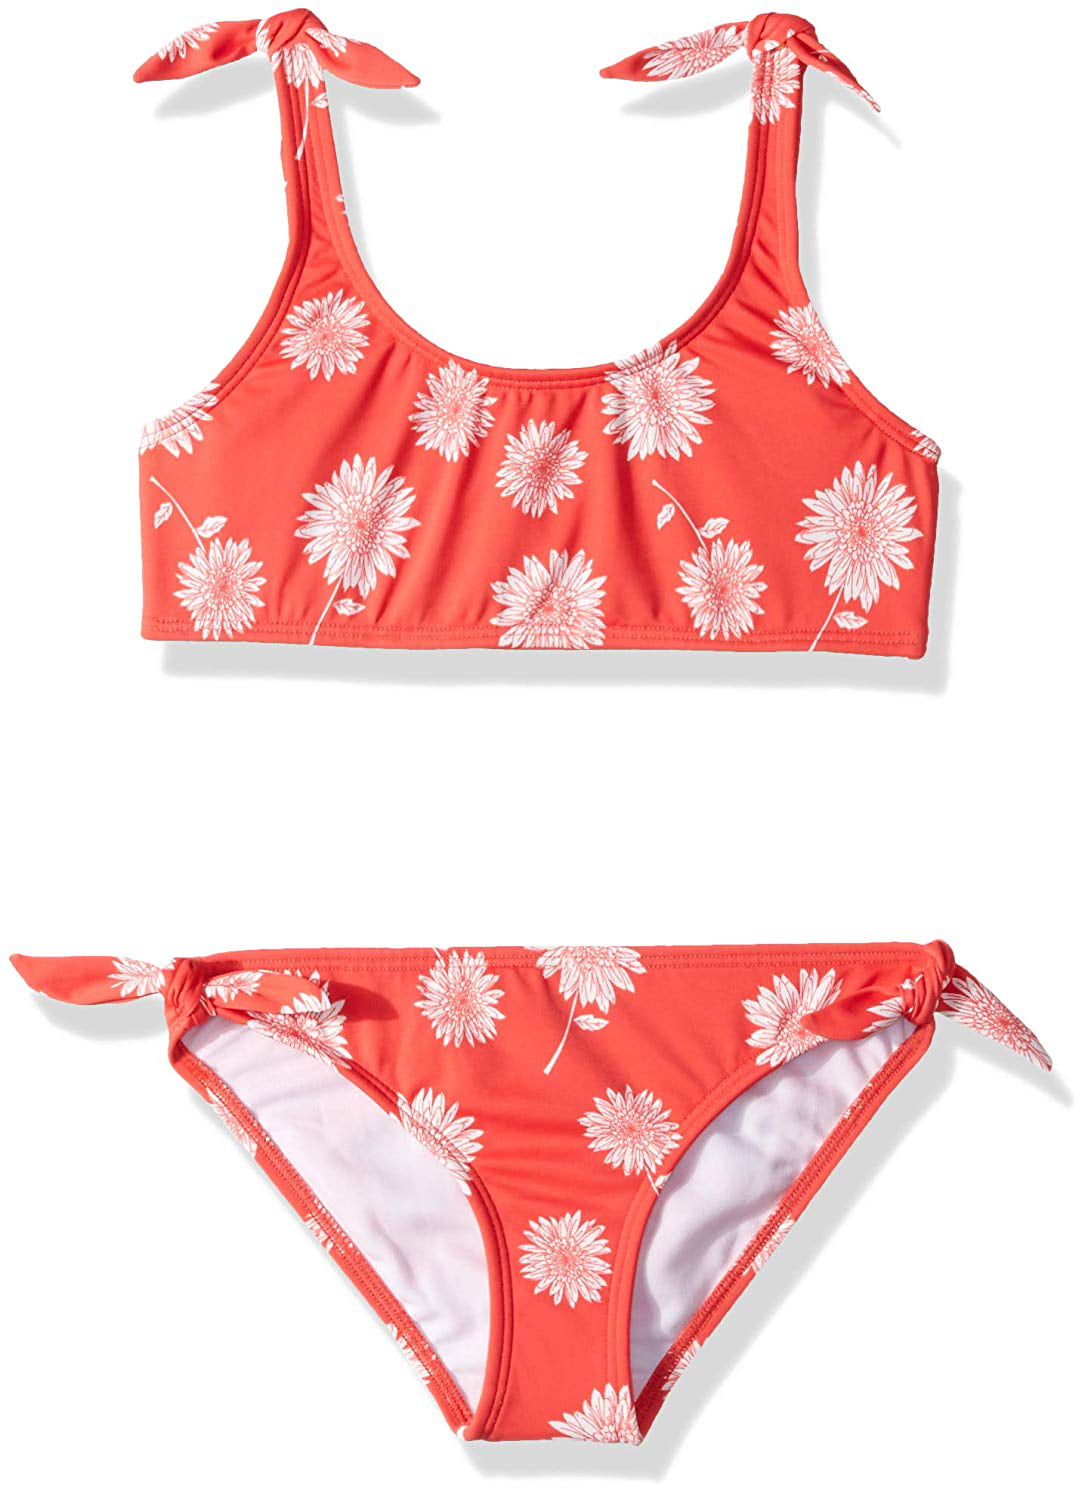 Girl's Swimwear Bikini Set Floral Printed Tied 10 - Walmart.com